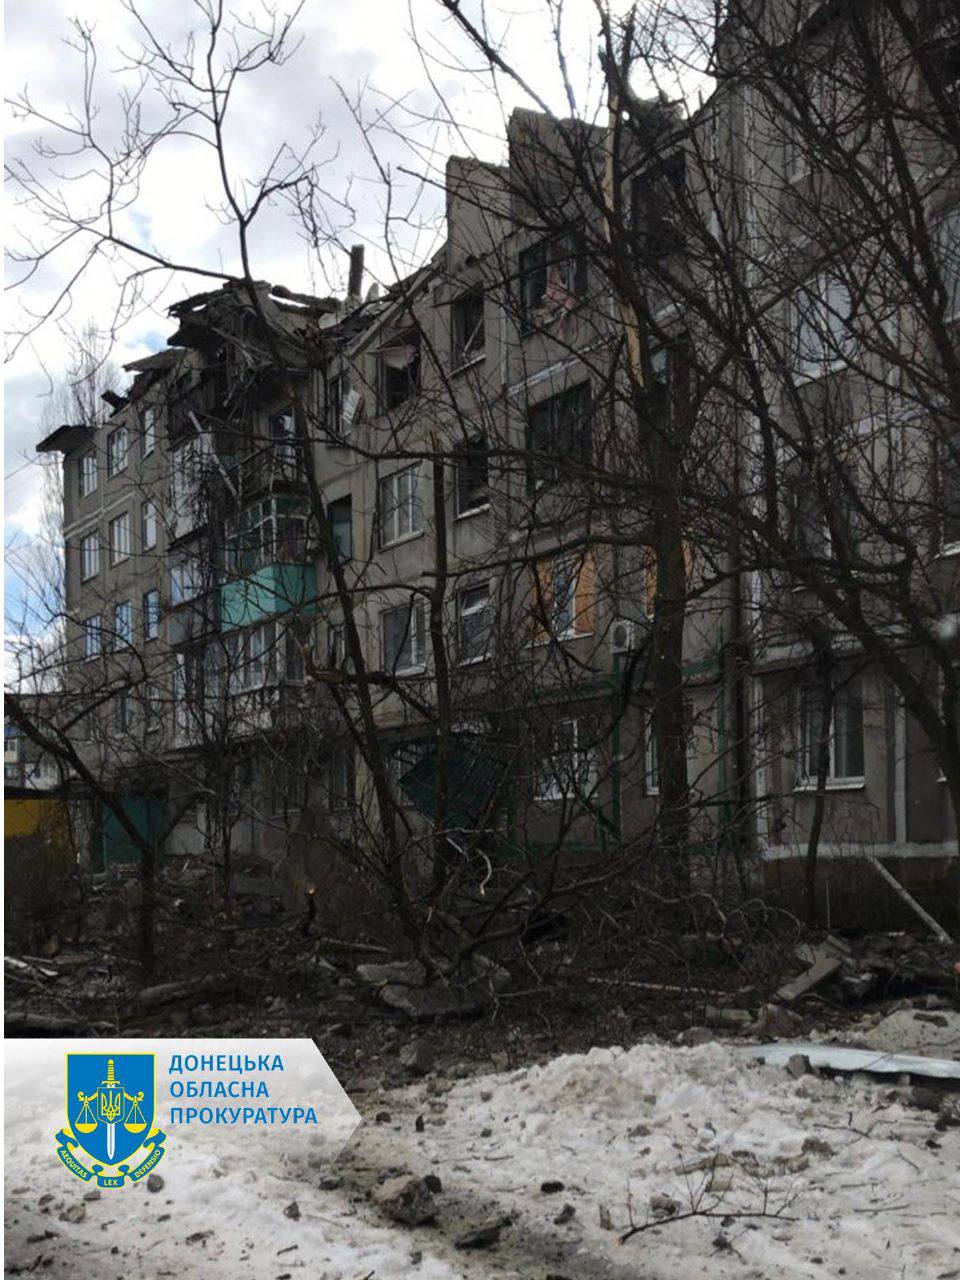 Один человек погиб и еще 12 пострадали в результате российского обстрела жилого дома в Покровске Донецкой области, - сообщил глава обладминистрации Павел Кириленко